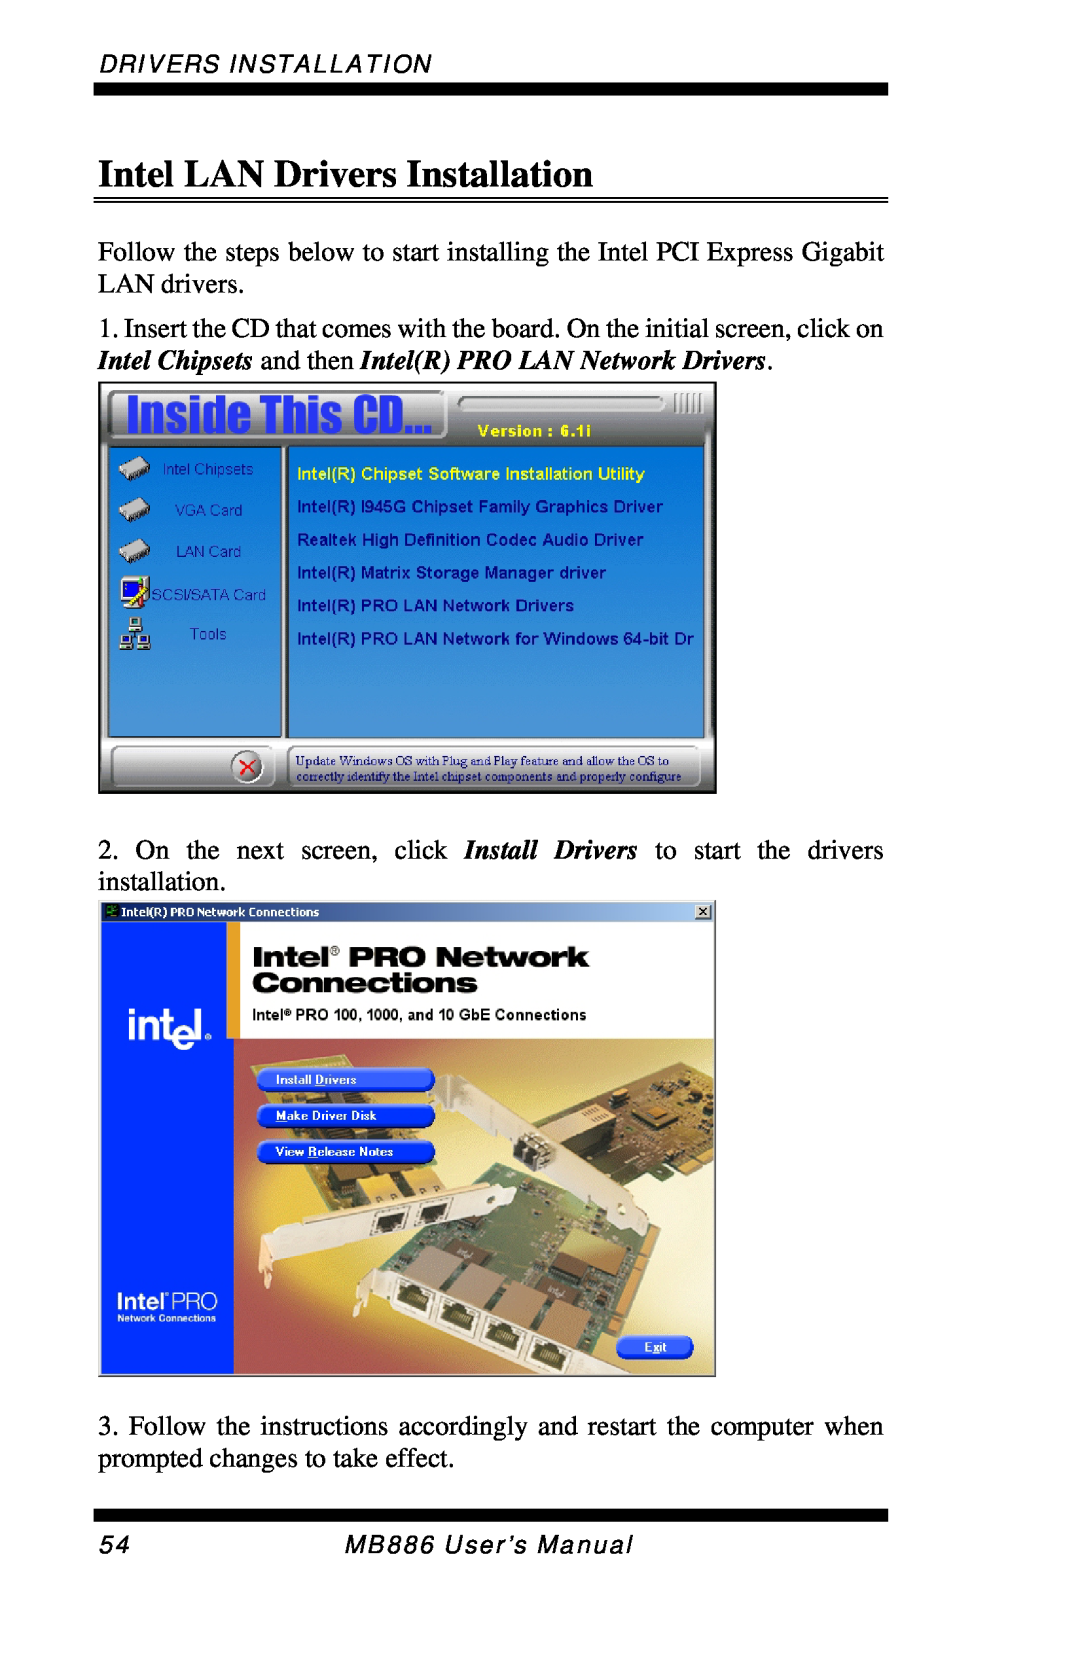 Intel MB886 user manual Intel LAN Drivers Installation 